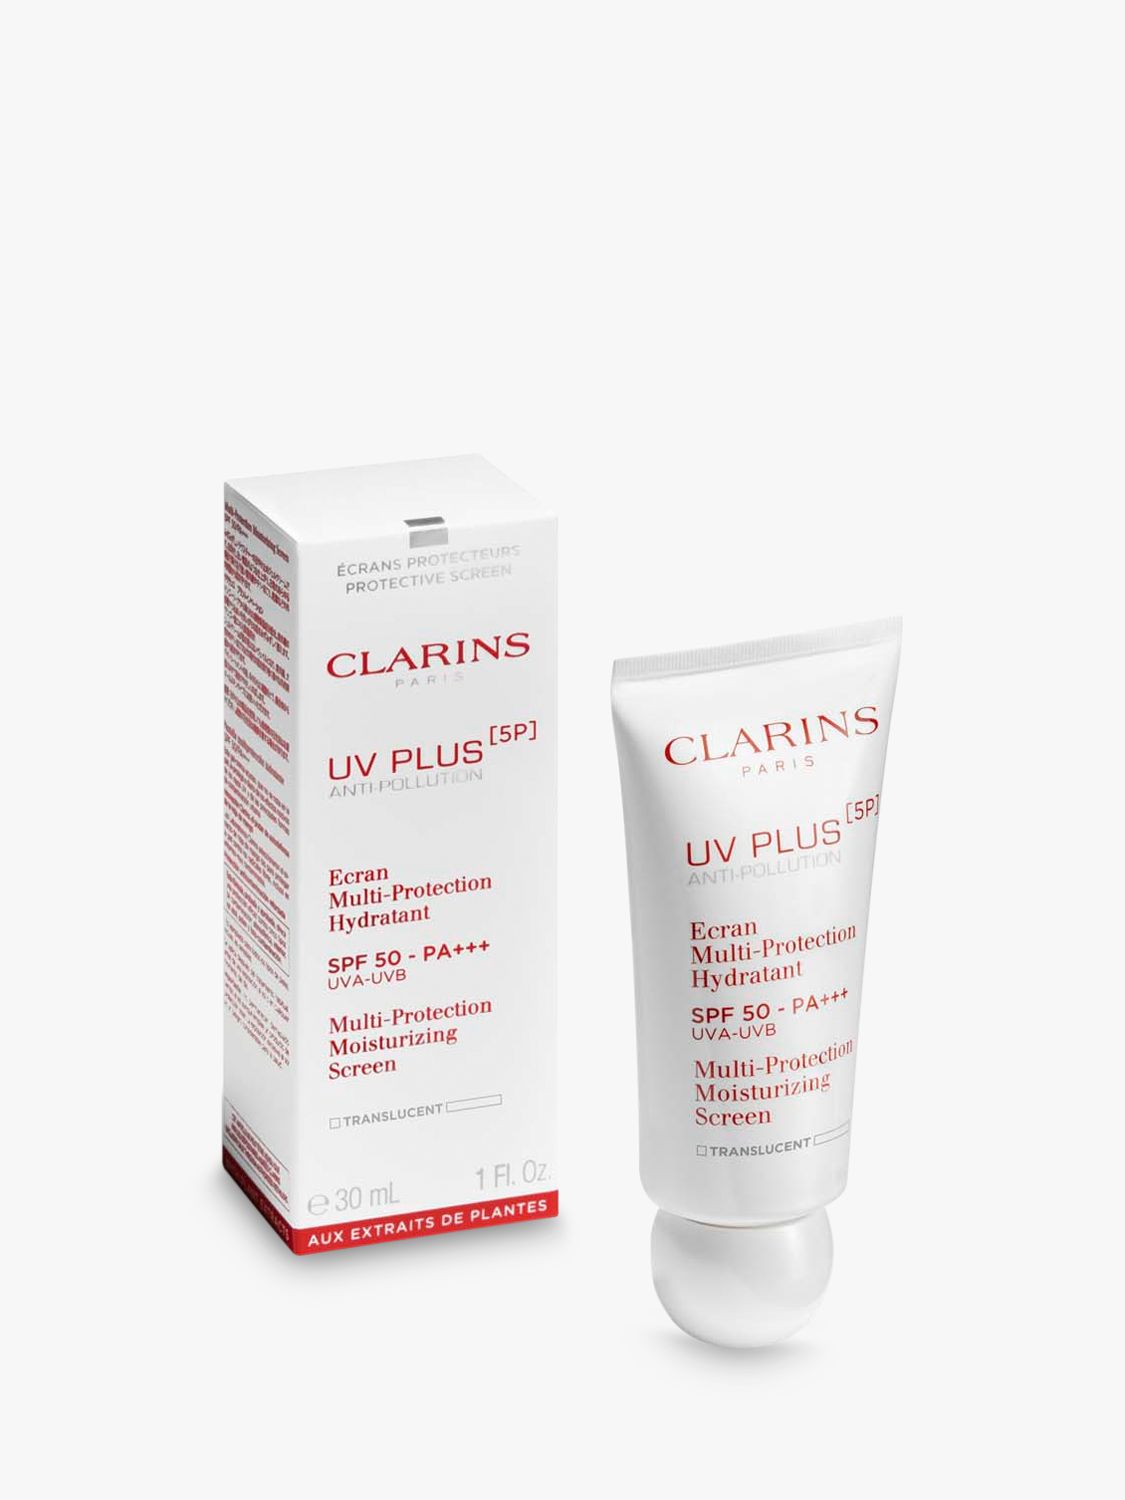 Clarins UV Plus Anti-Pollution SPF 50, Translucent